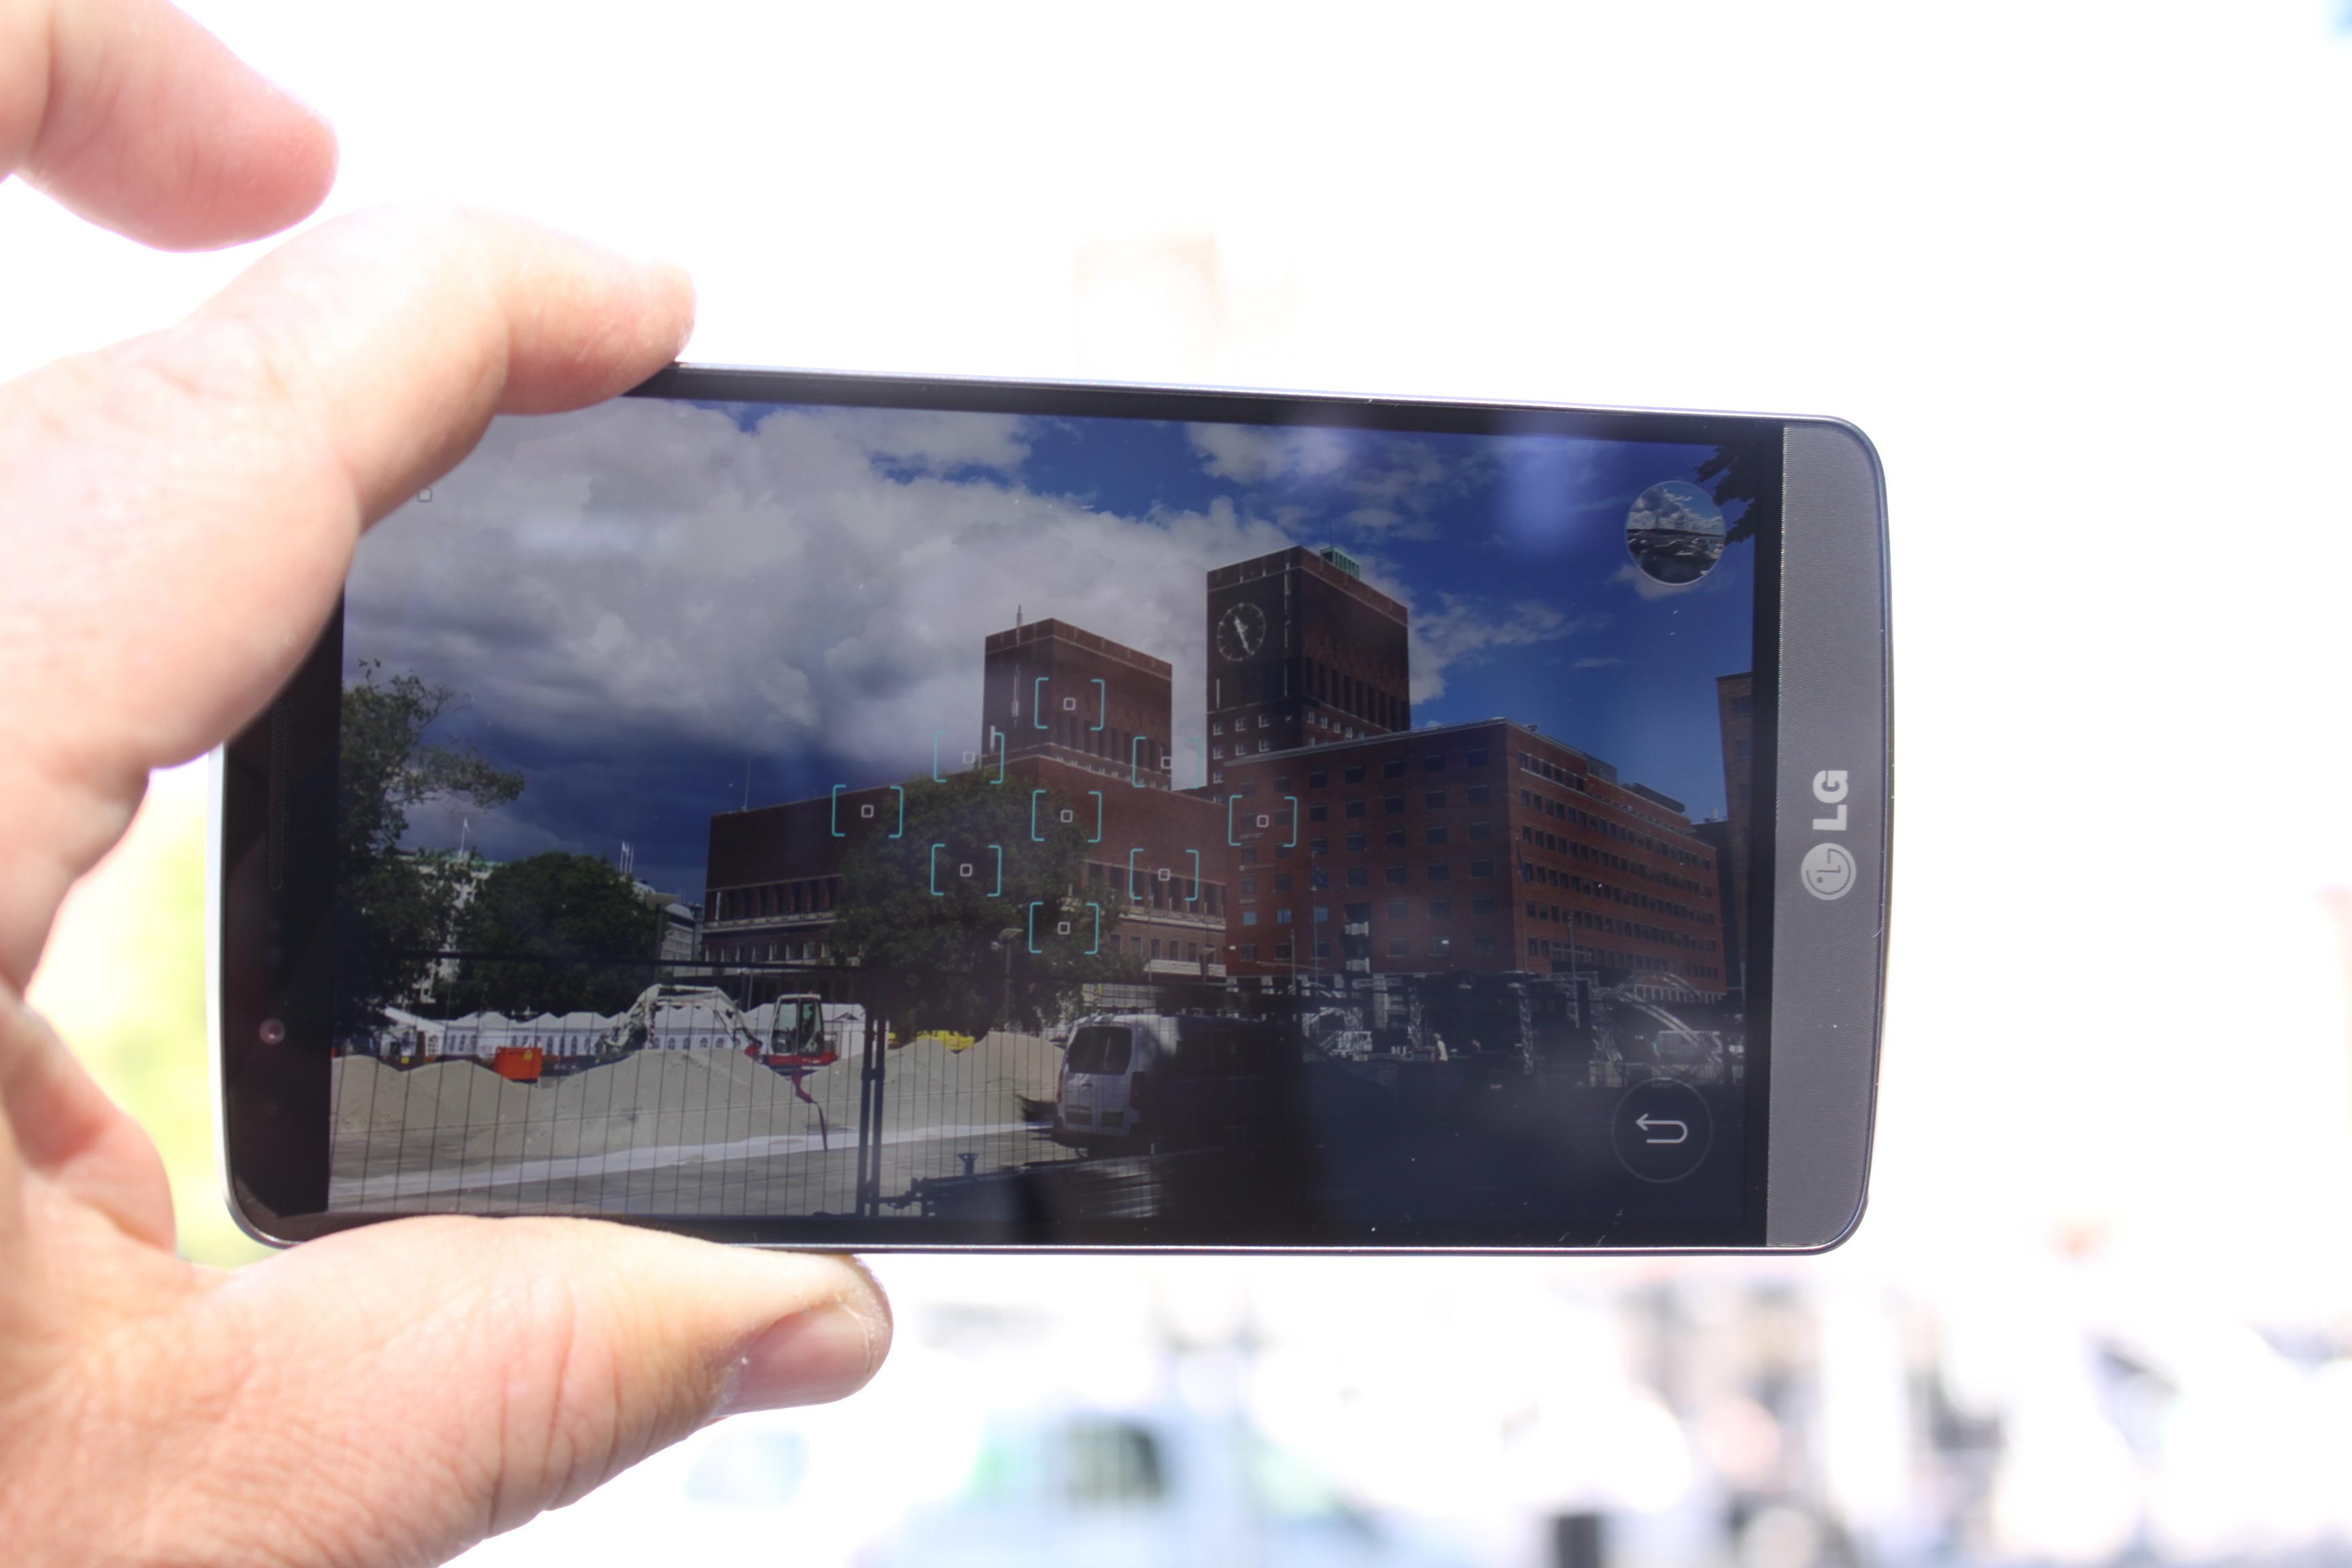 LG G3 har lynrask, laserstyrt, autofokus. Den knipser bildene ekstremt raskt.Foto: Espen Irwing Swang, Amobil.no